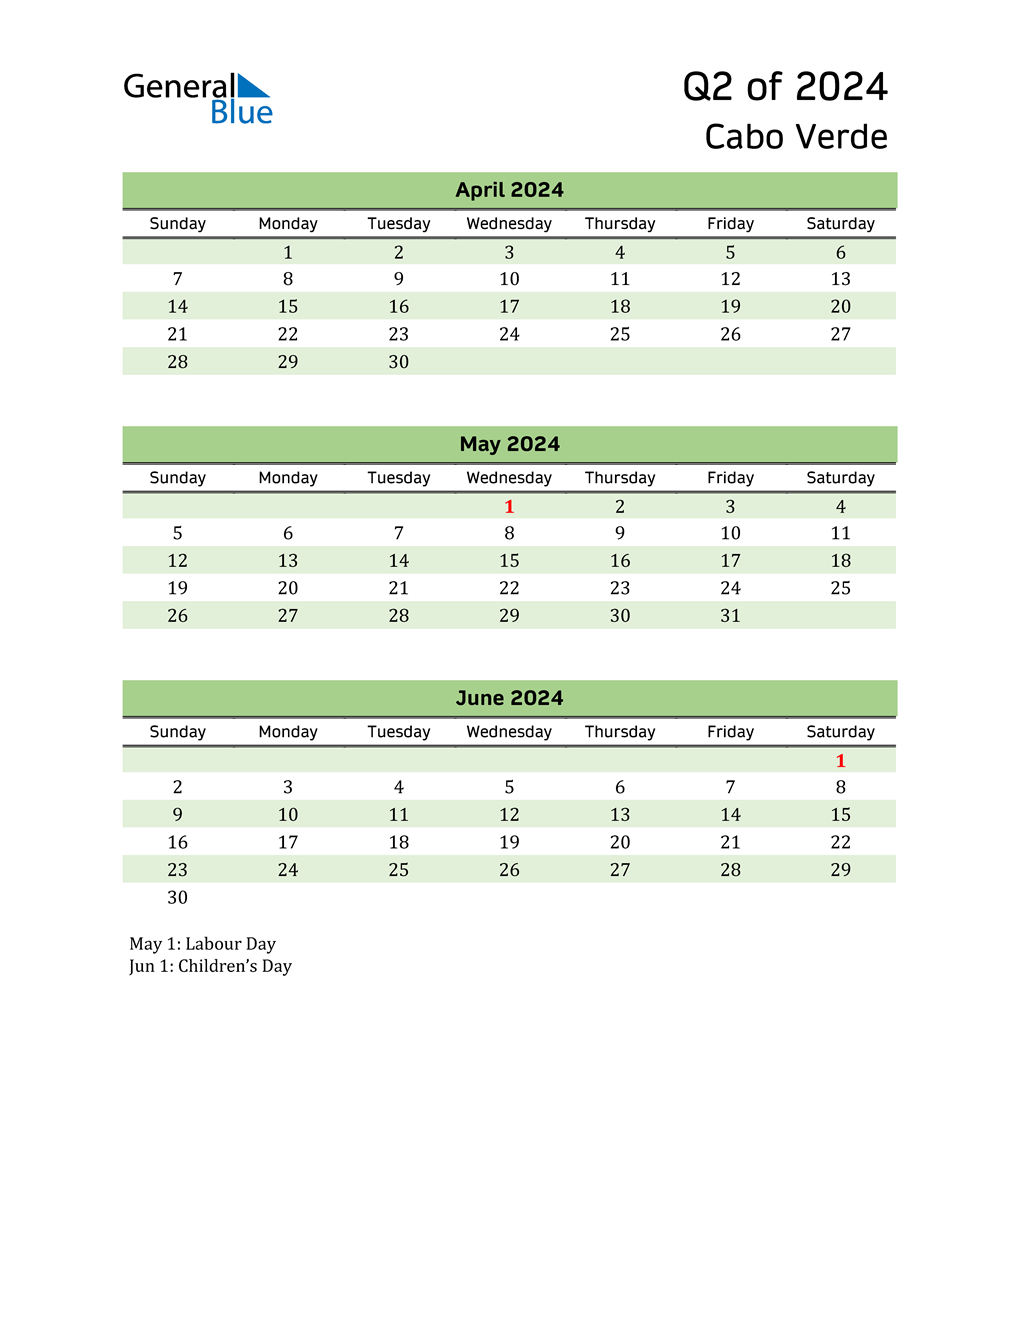  Quarterly Calendar 2024 with Cabo Verde Holidays 